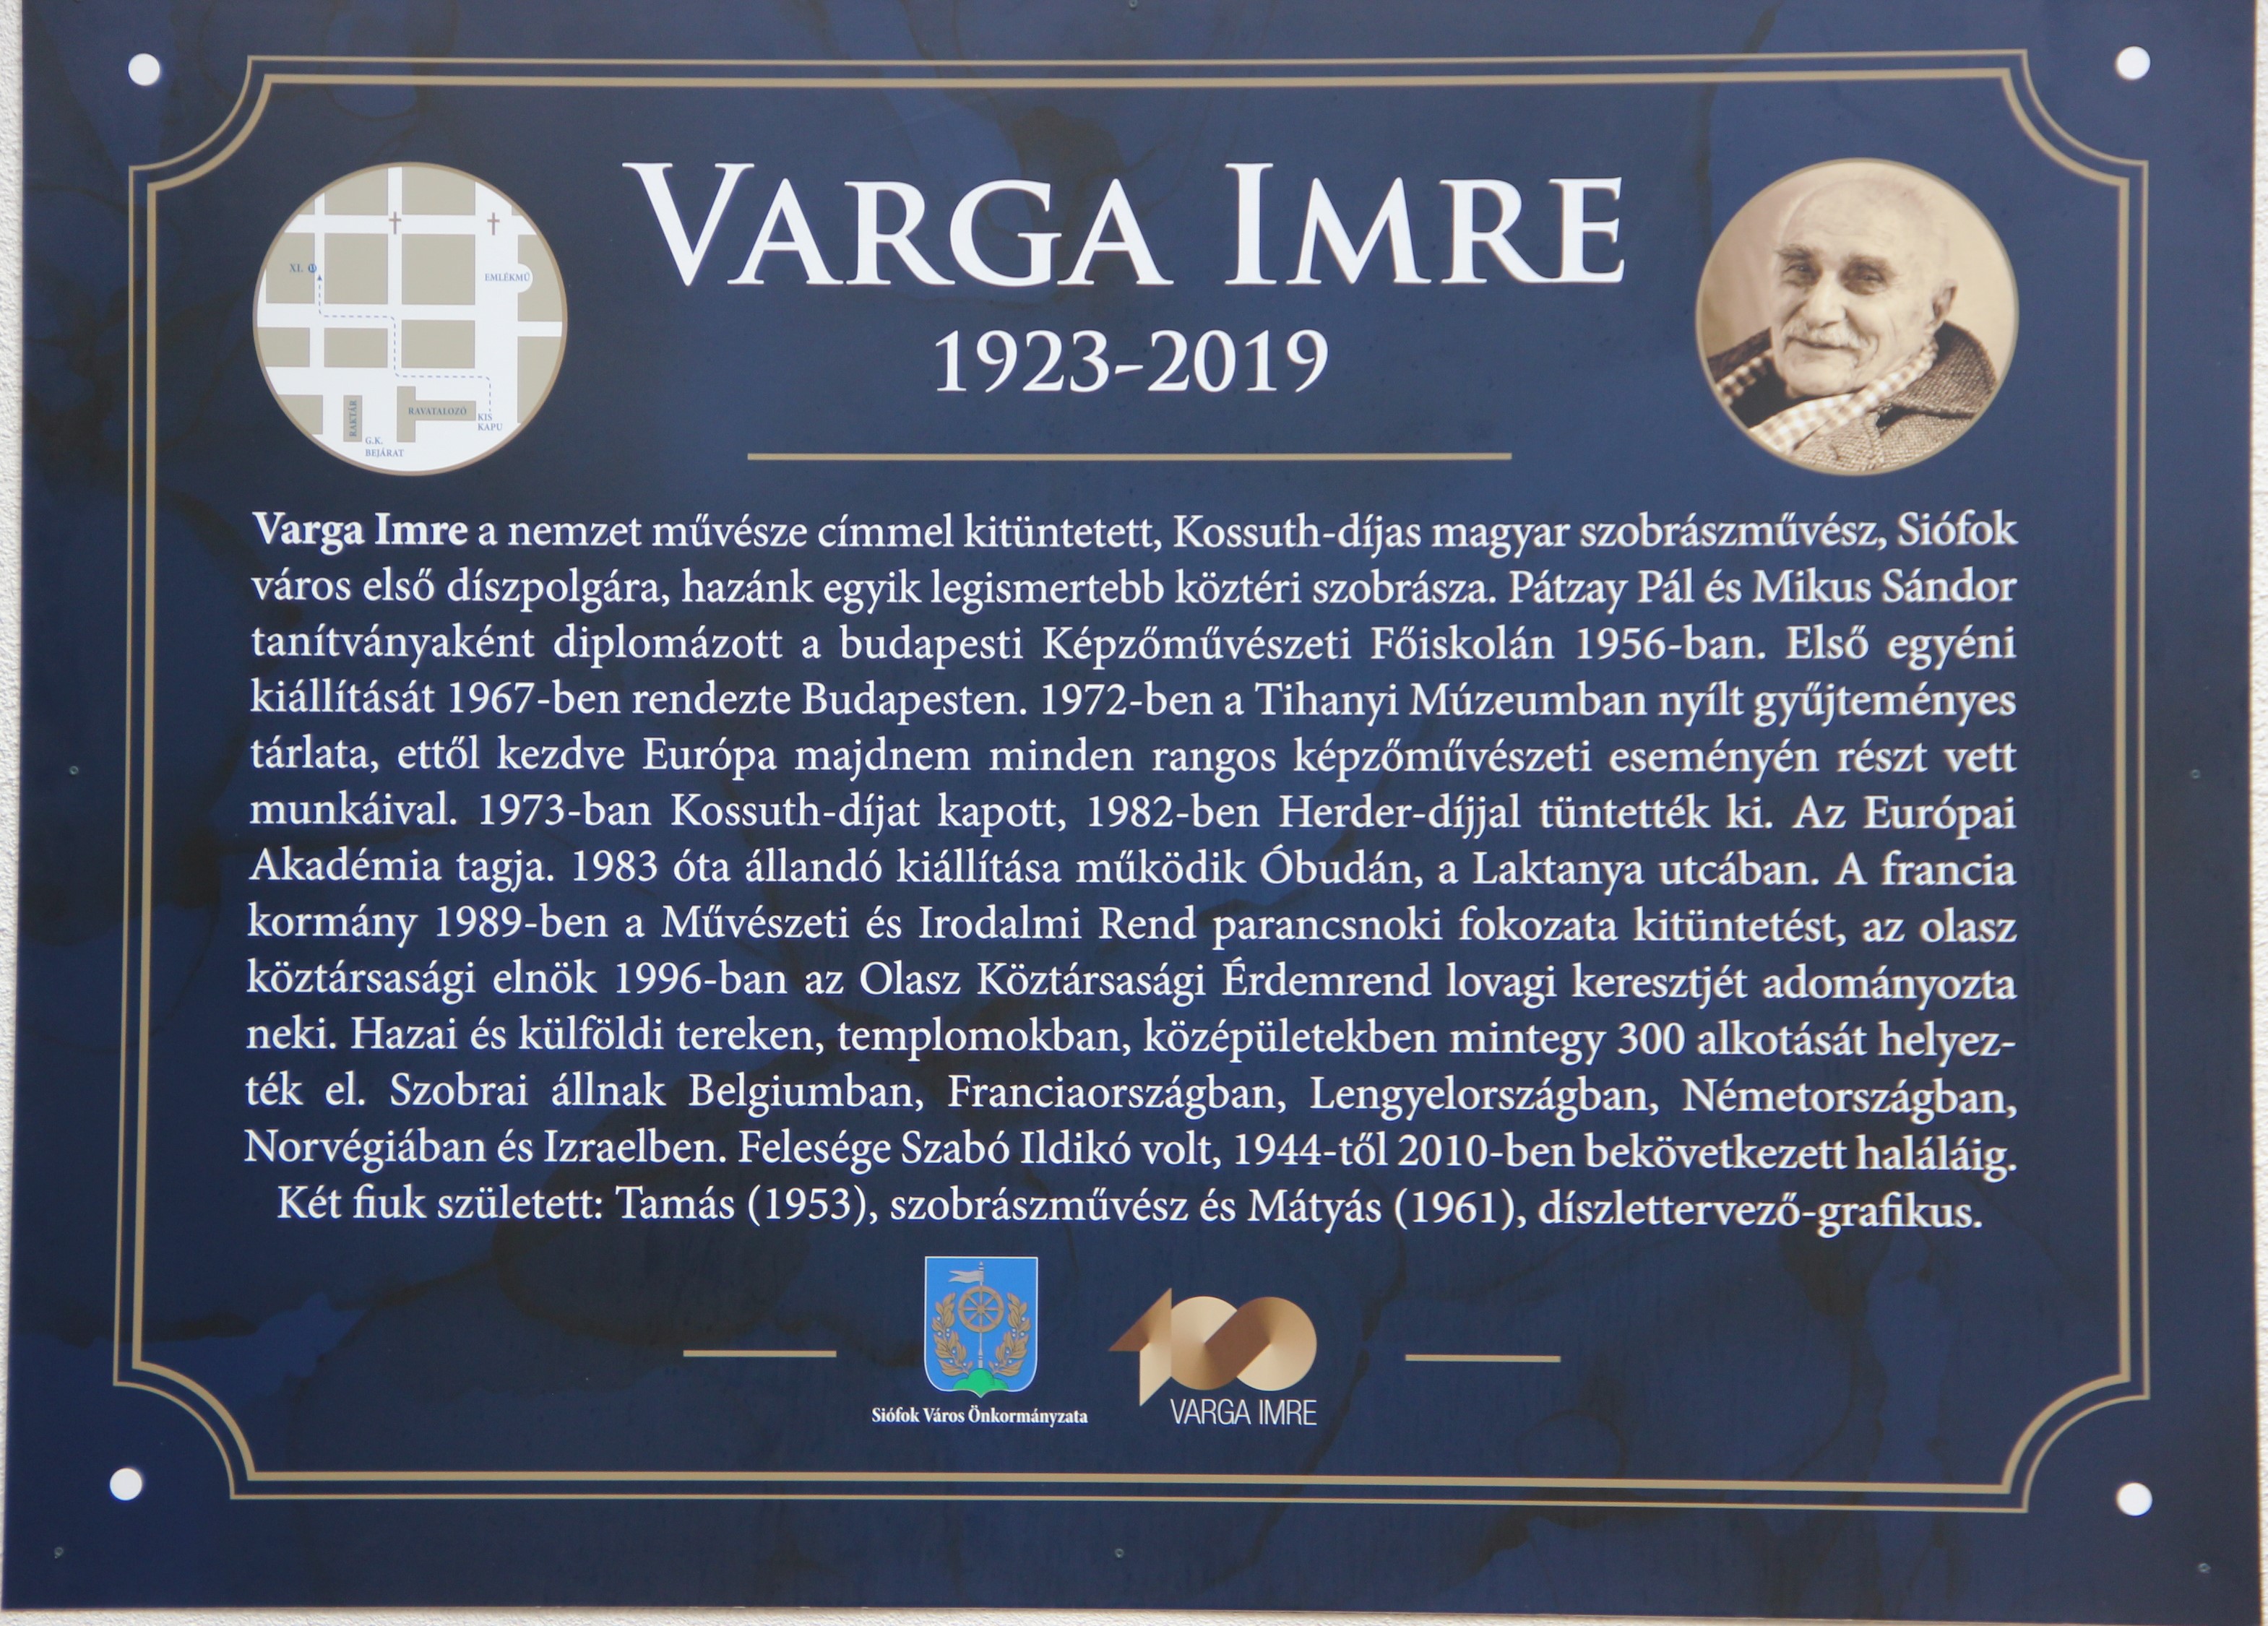 Varga Imre 100